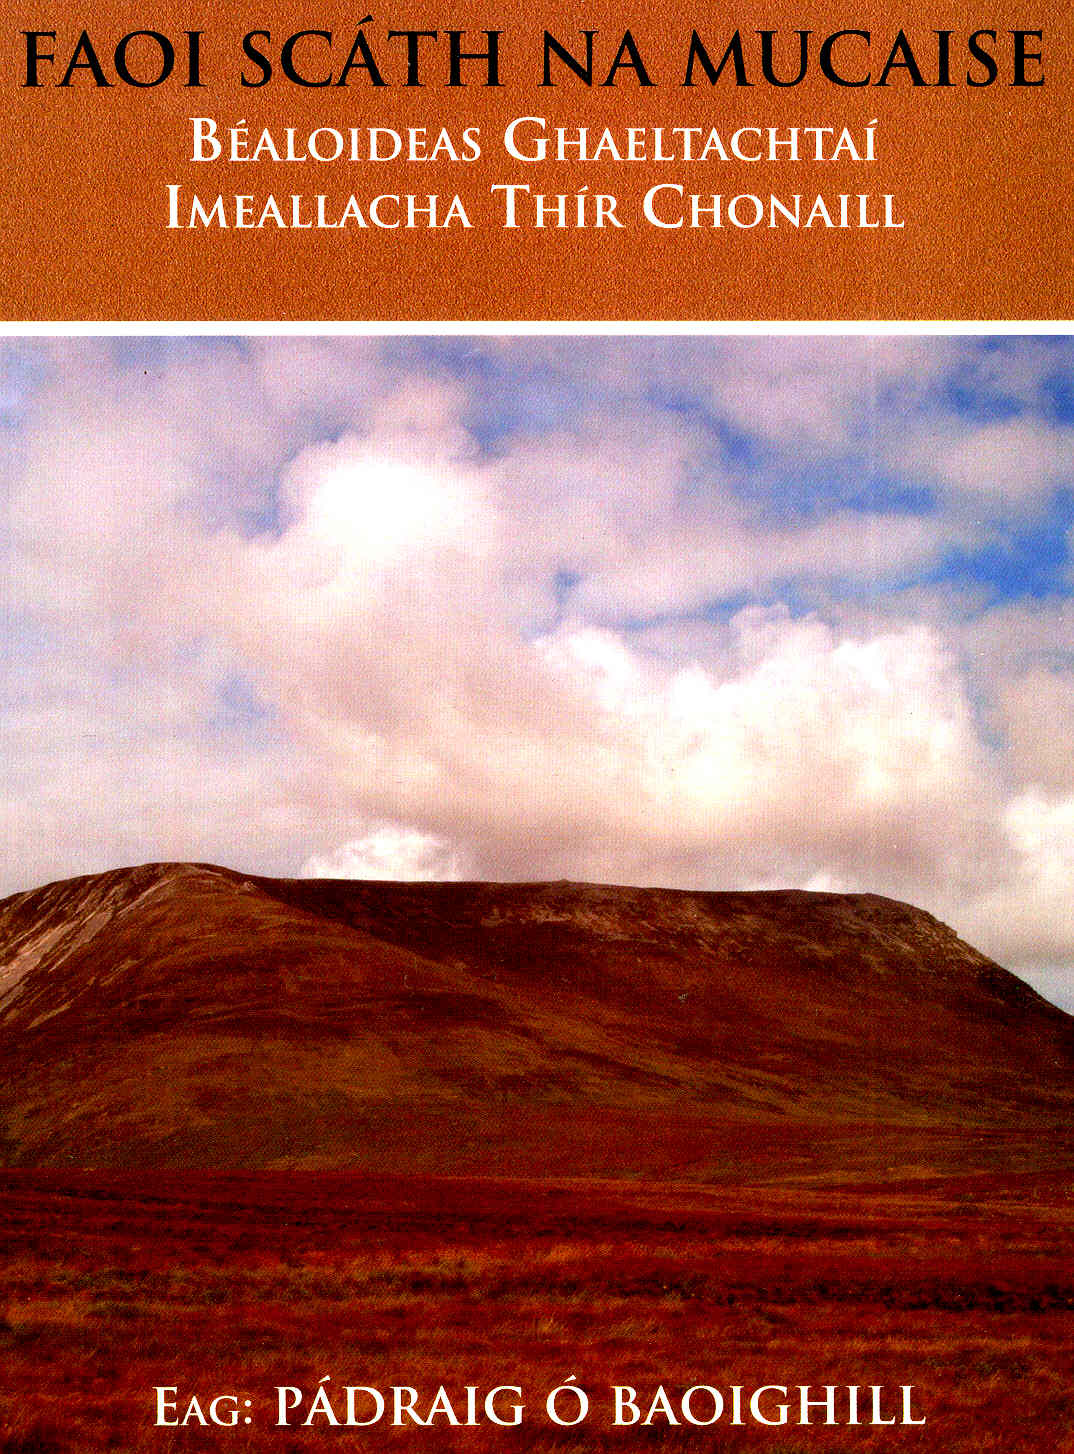 Bealoideas Tir Chonaill 2005 Padraig O Baoighill